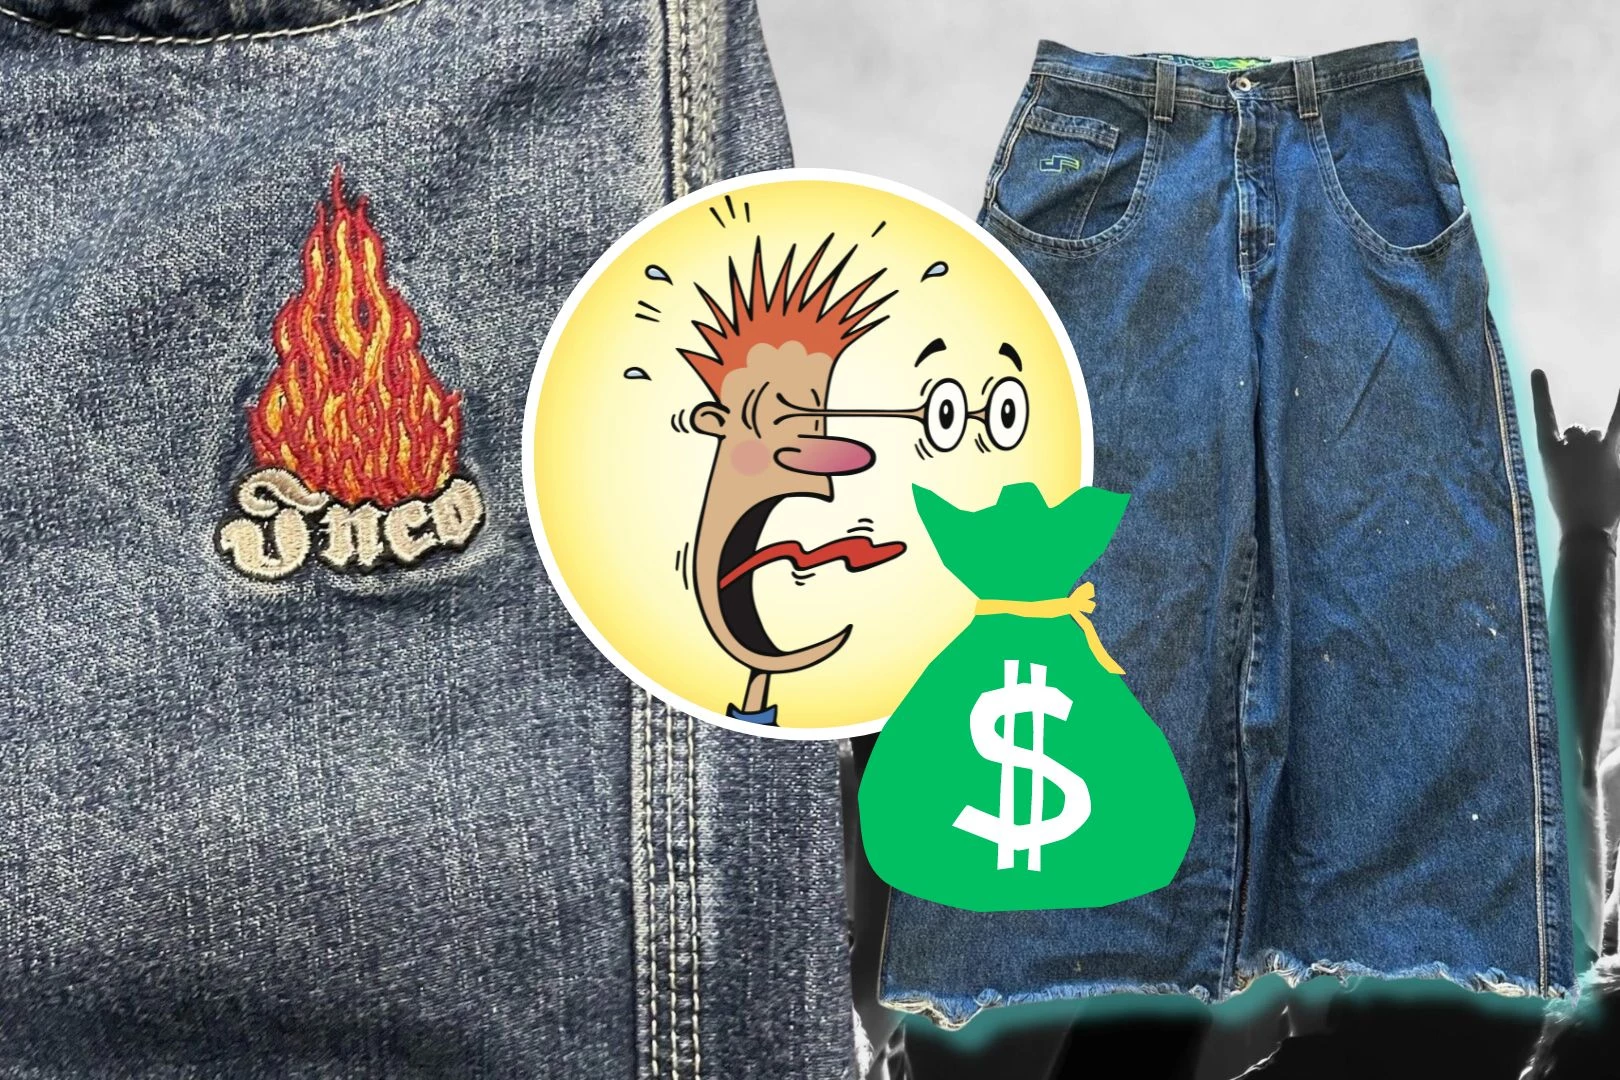 Vintage JNCO Jeans Selling for Big Bucks on Resale Market